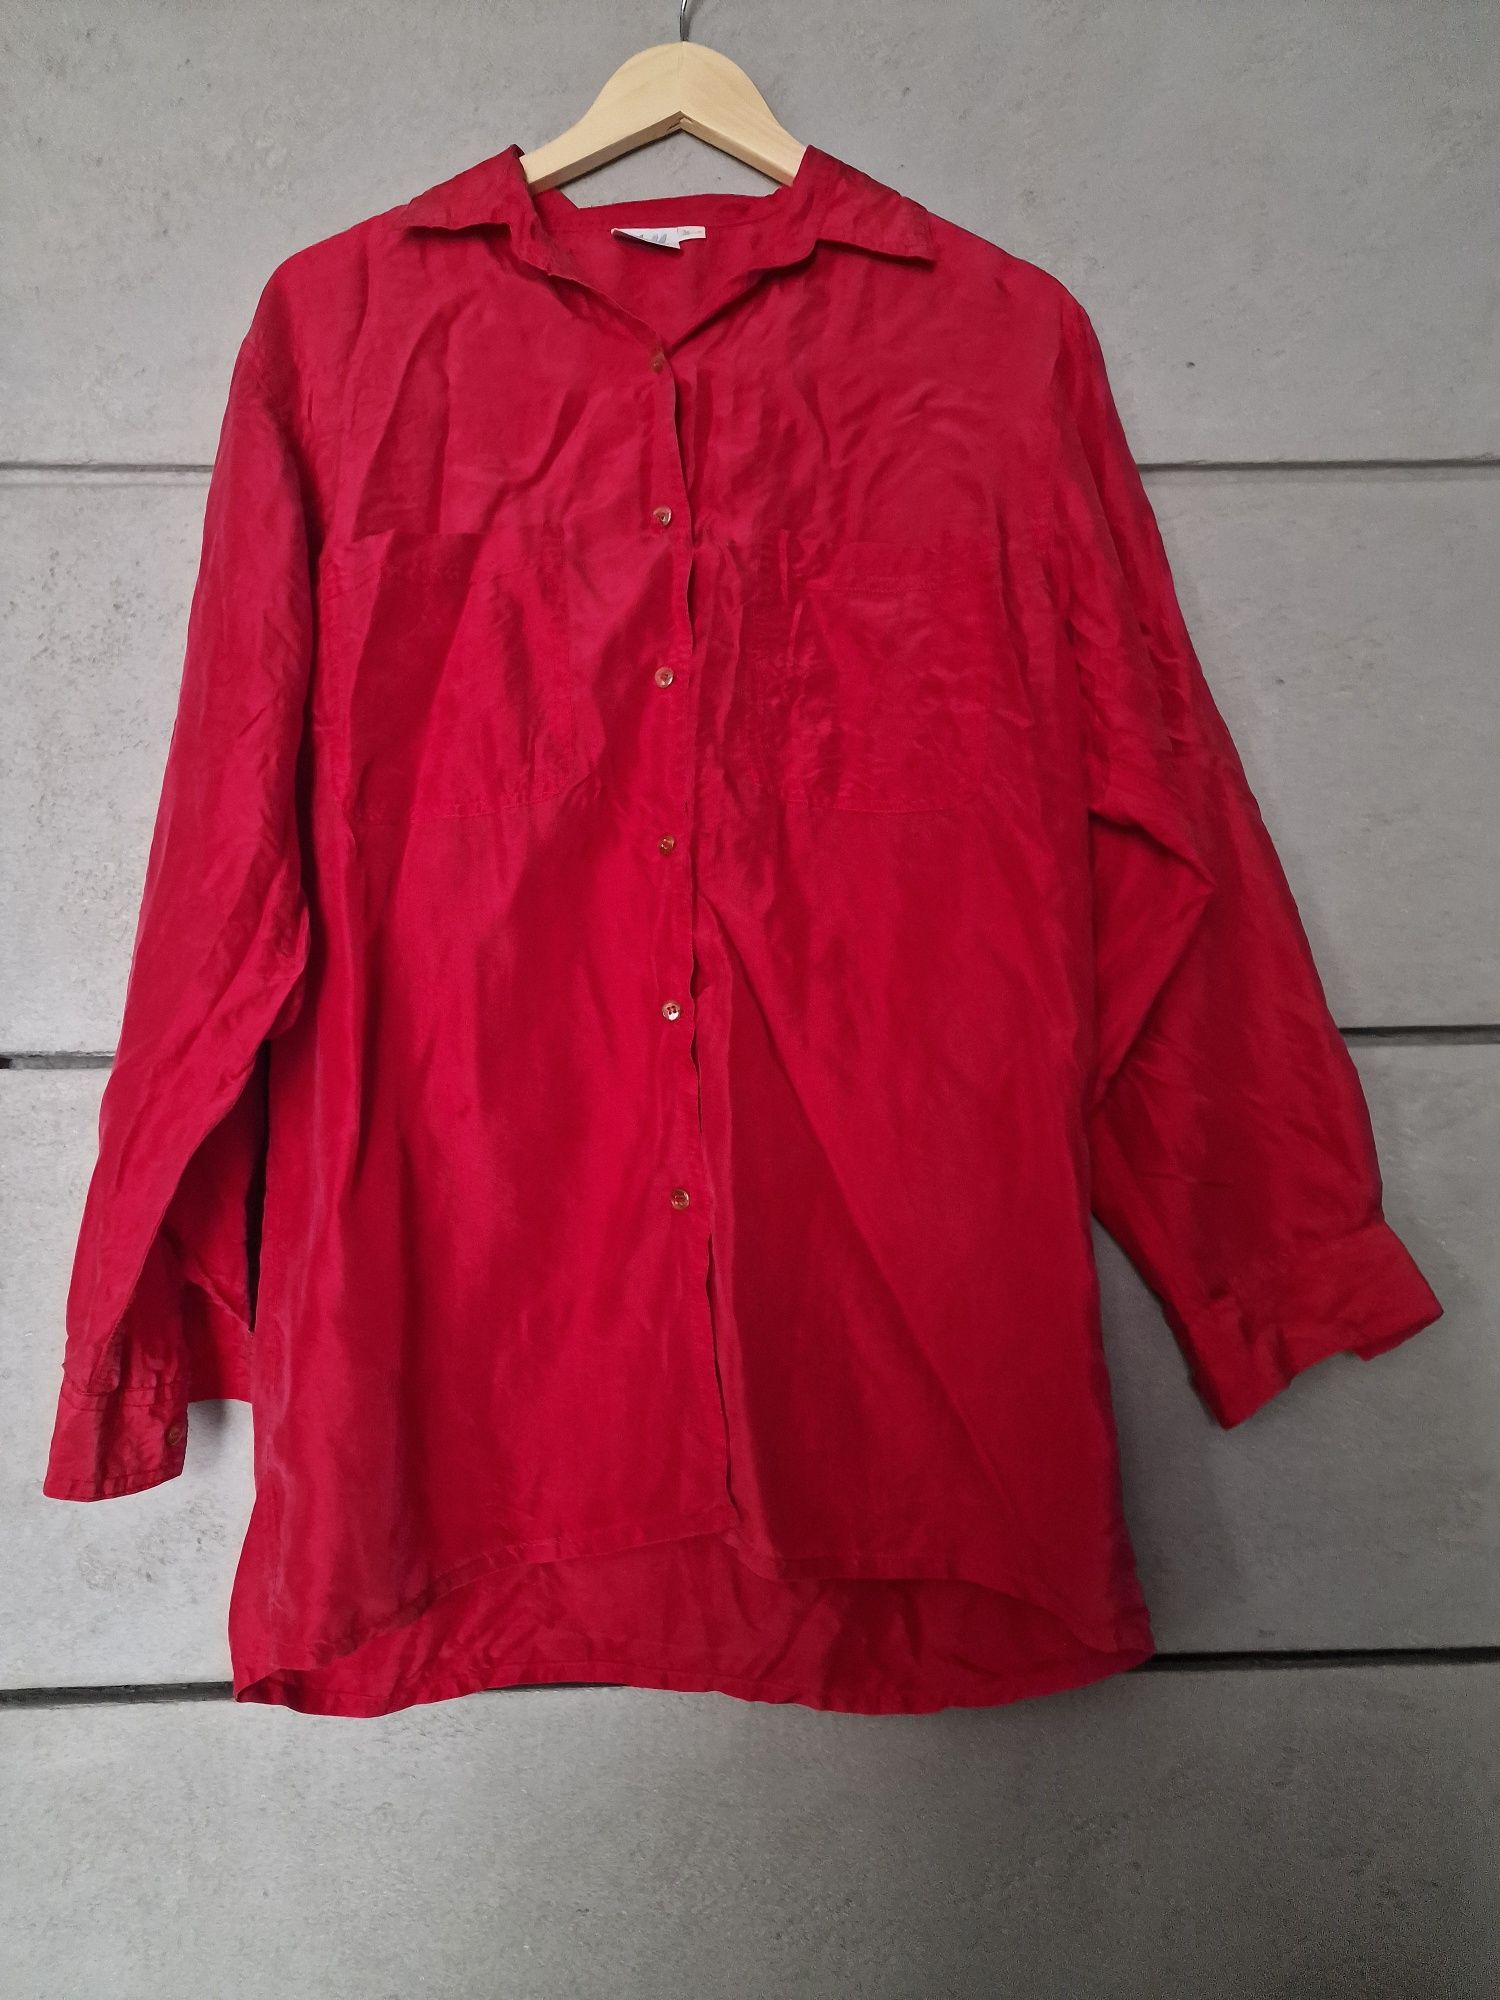 Koszula czerwona bordowa H&M 100% jedwab M L